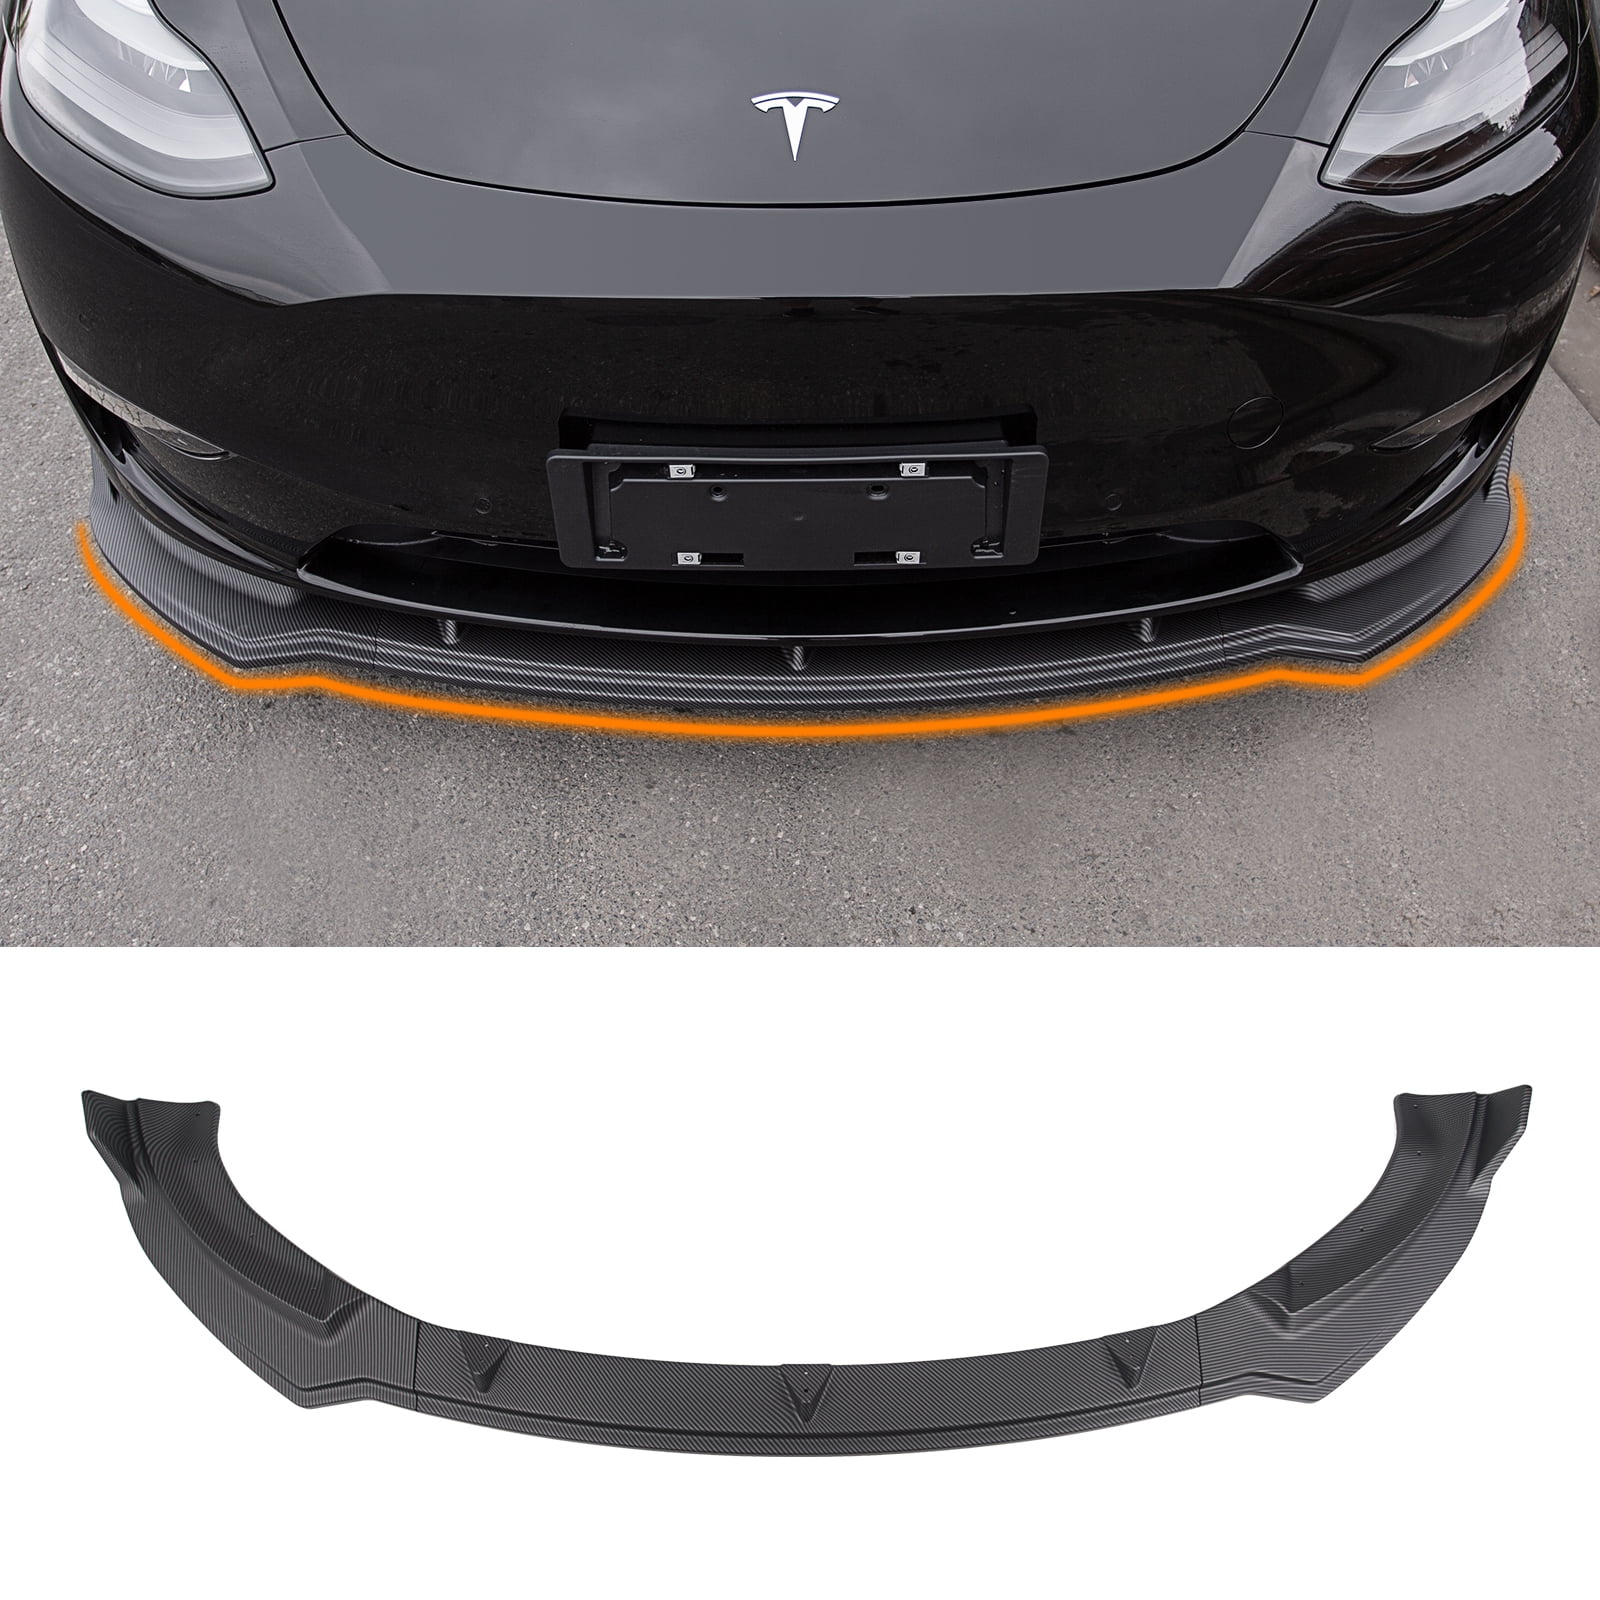 2Pcs Red Carbon Fiber Exterior Car B-Pillar Cover Trim For Tesla Model Y 